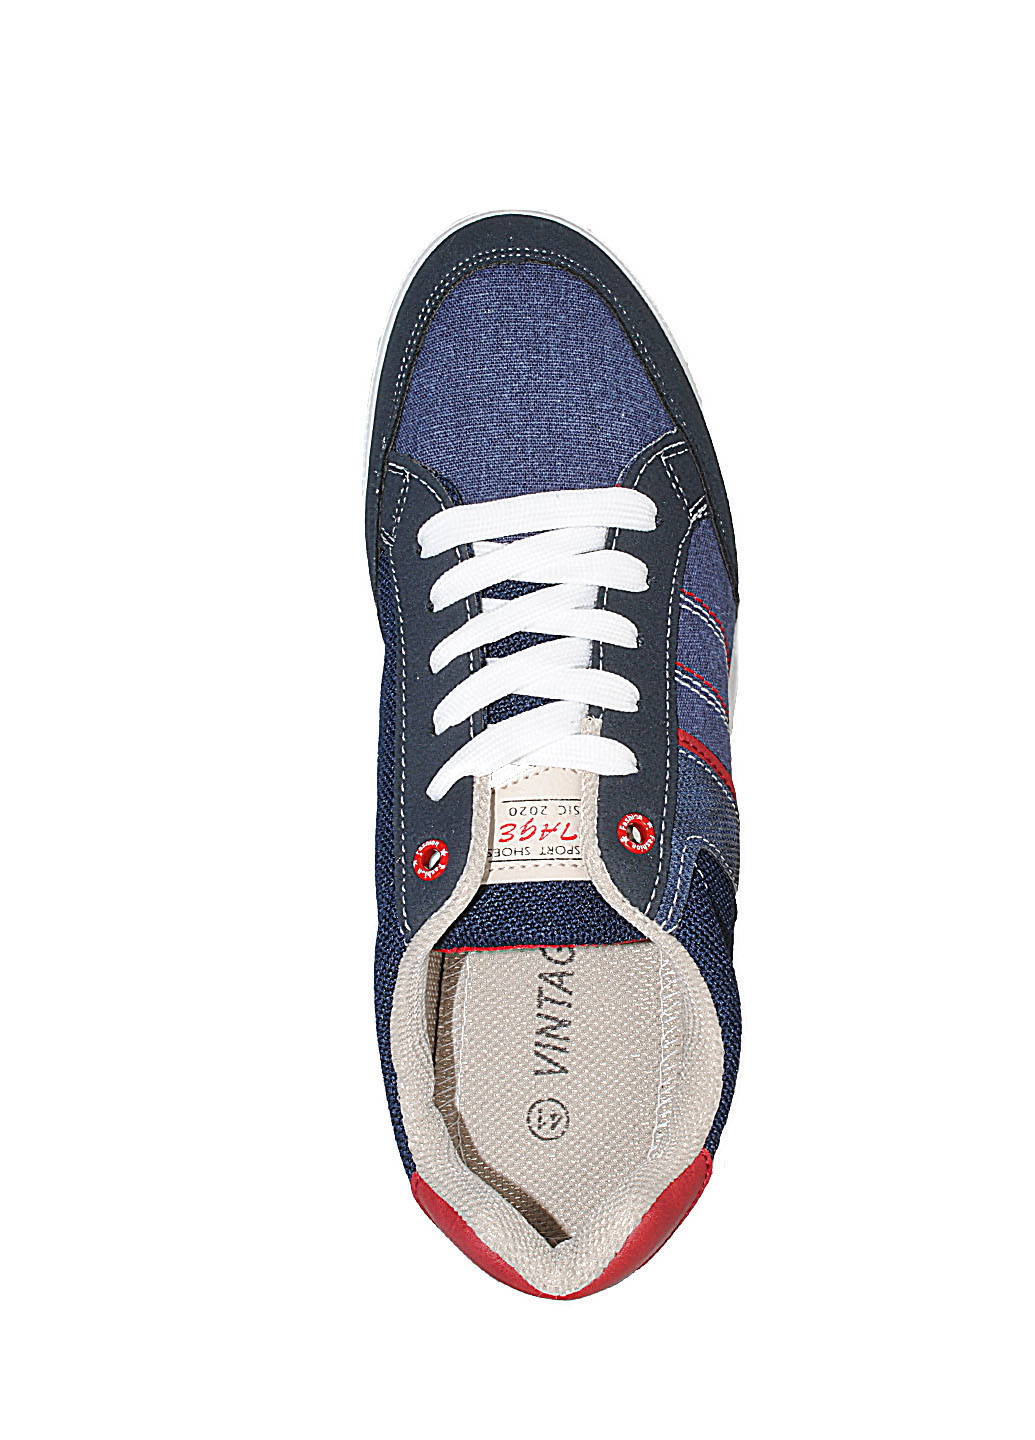 Синие демисезонные кроссовки ra221-7 navy Vintage